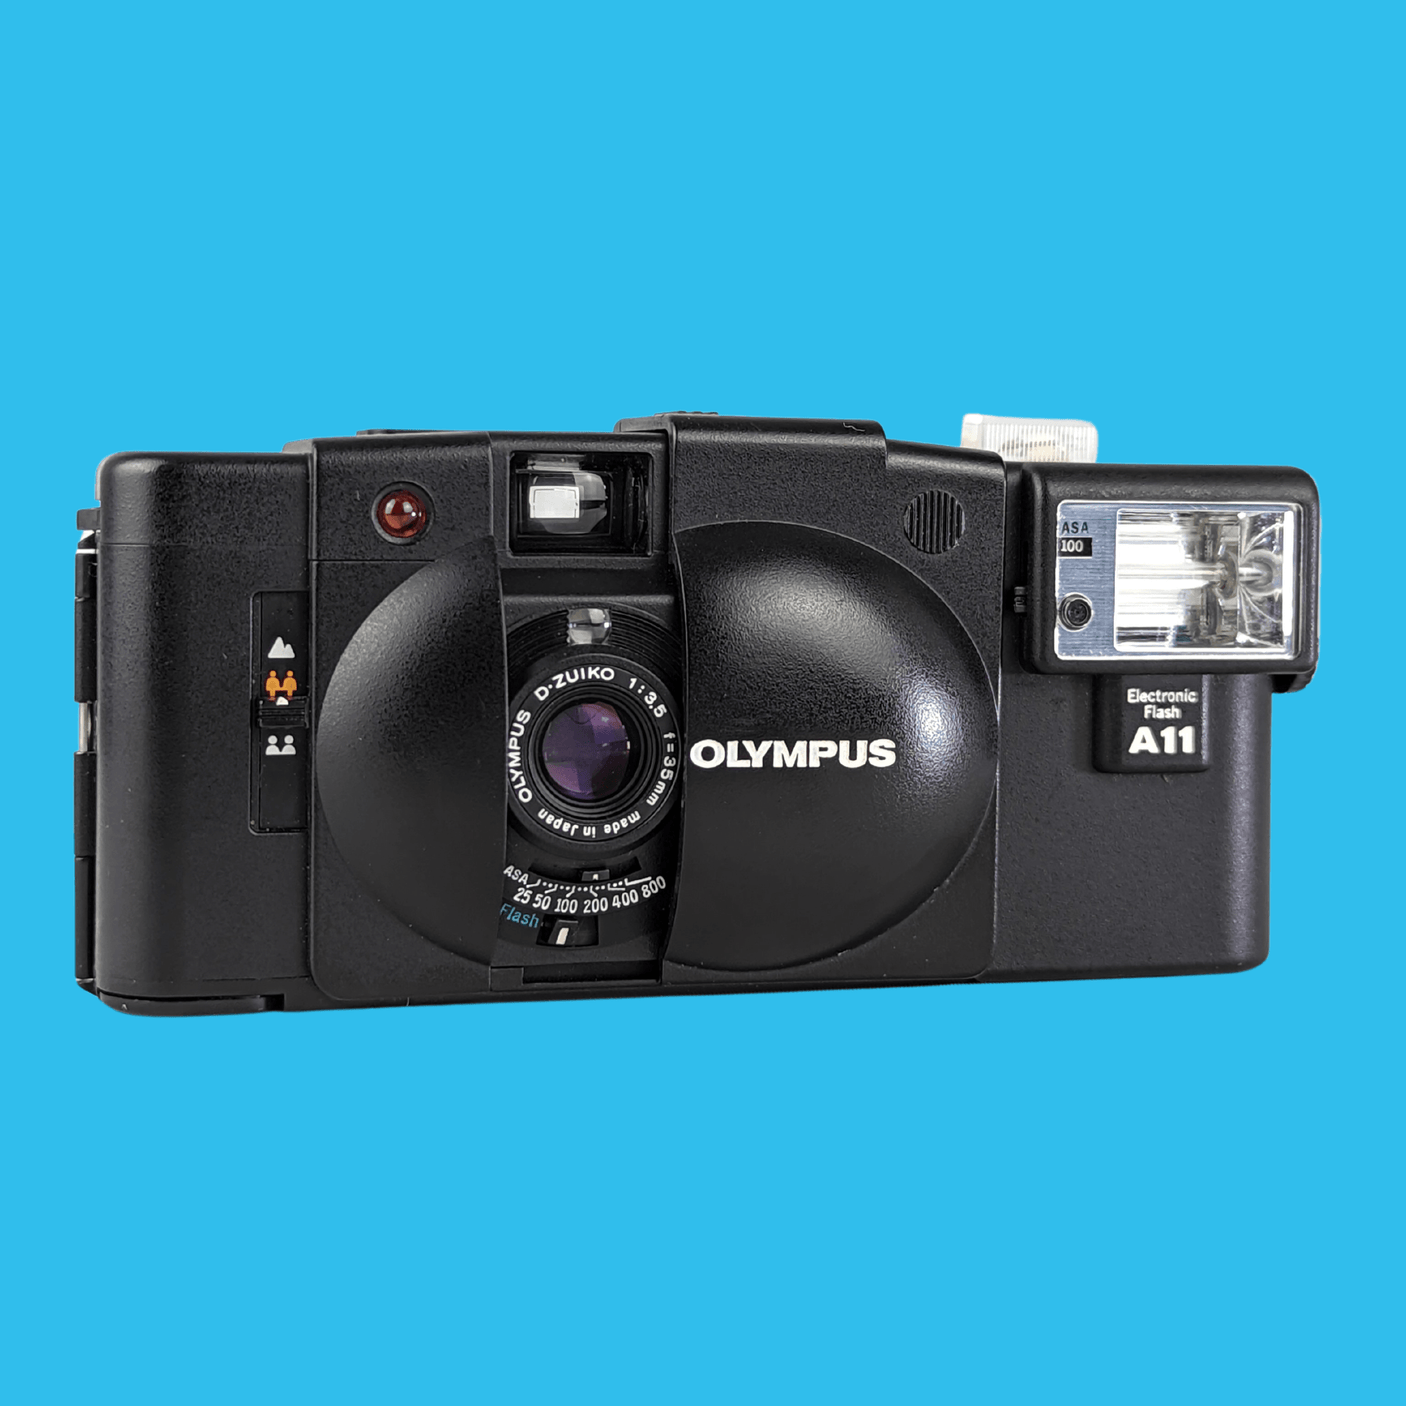 OLYMPUS XA2 コンパクトフィルムカメラ + Flash A11 - フィルムカメラ